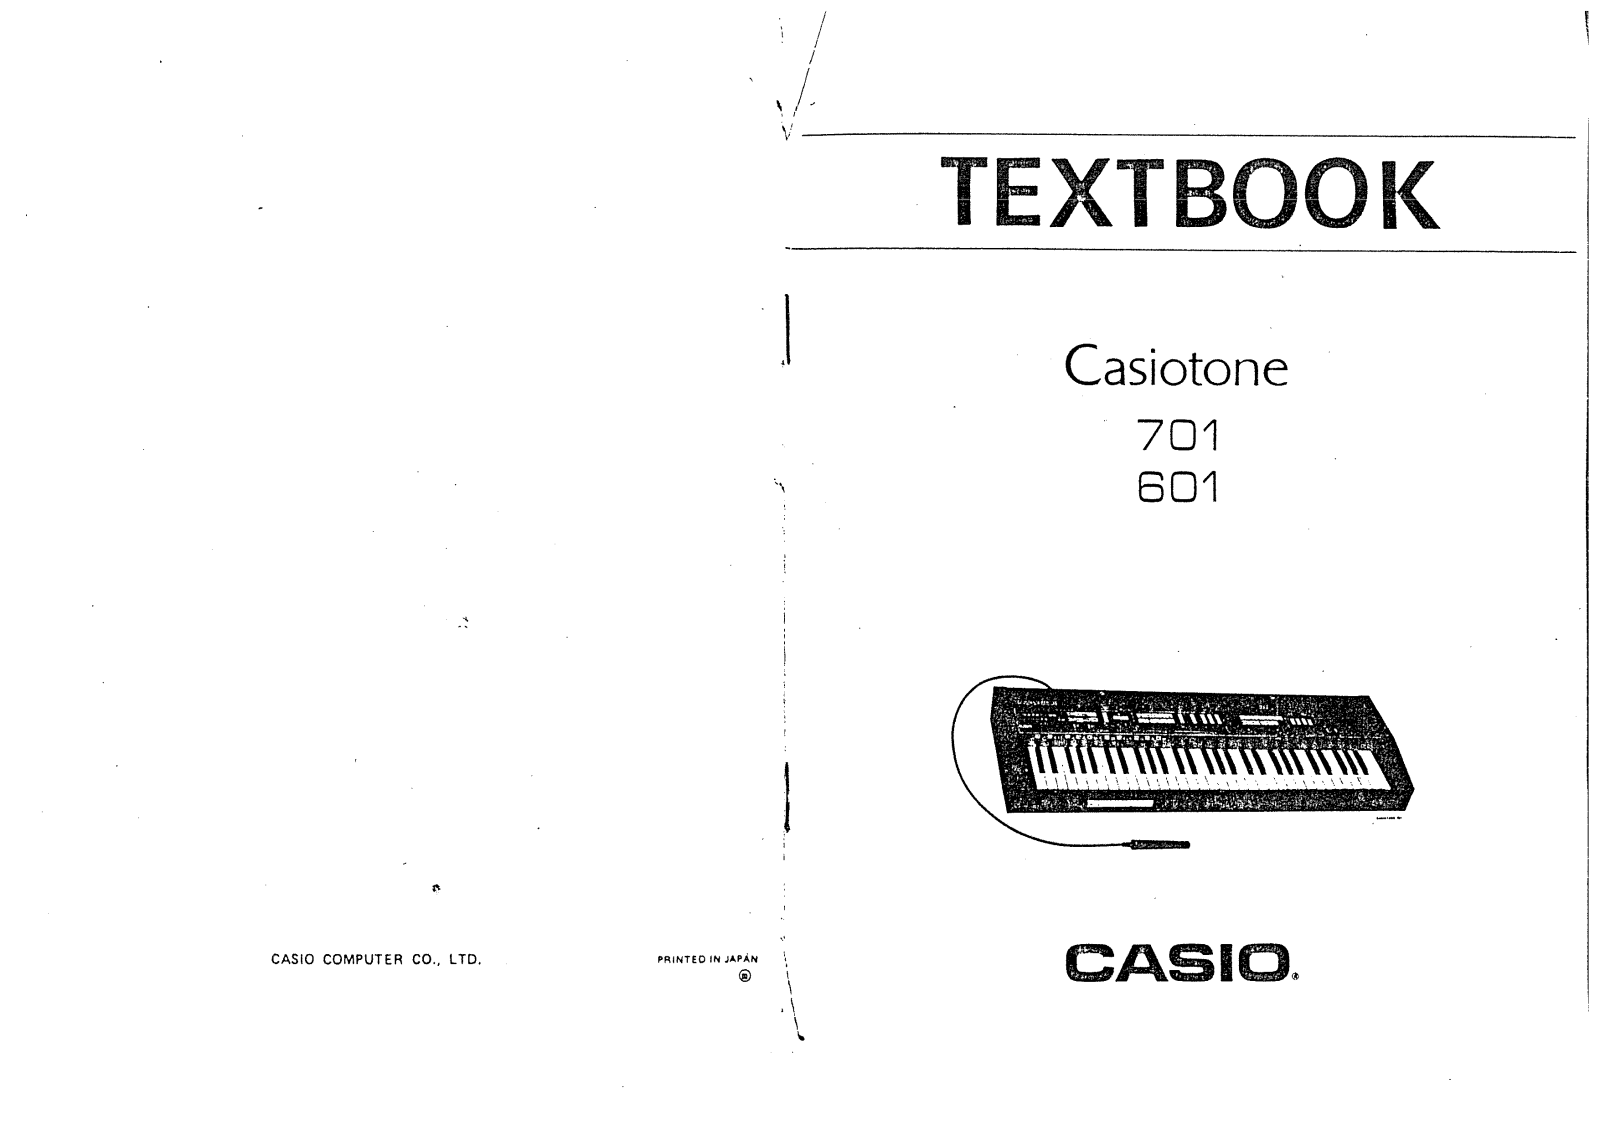 Casio ct 601, ct 701 textbook